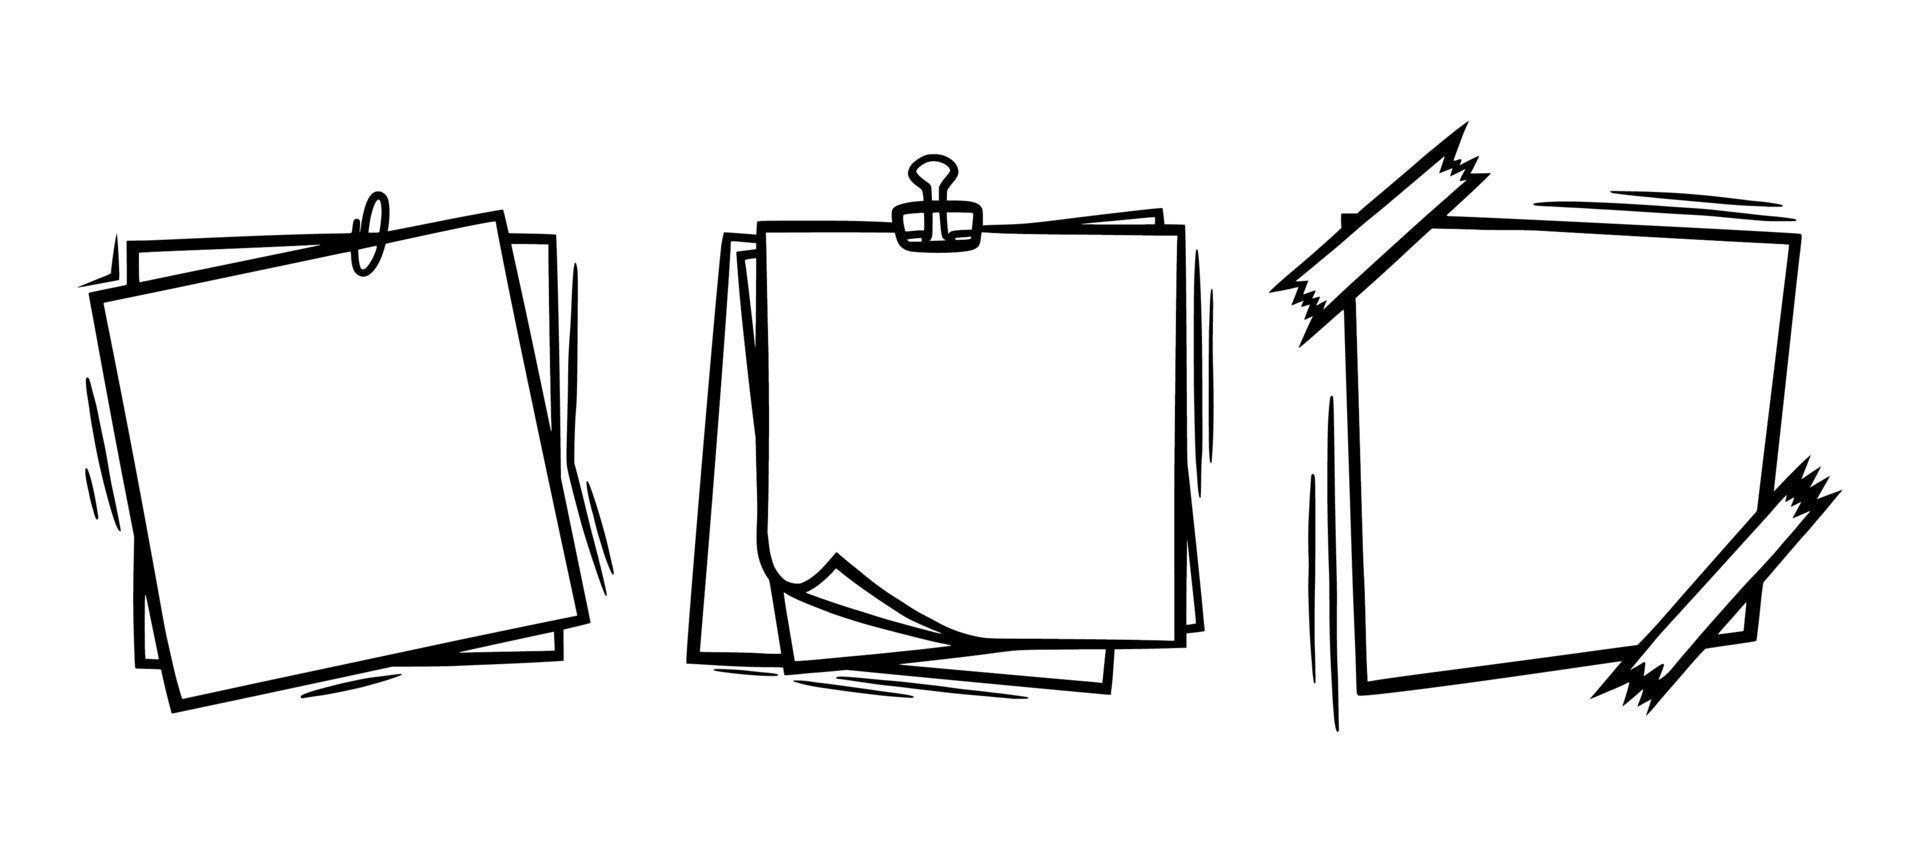 tekening papier lakens met klem en kleverig plakband elementen. leeg papier Pagina's voor memo's en berichten. tekening vector illustratie